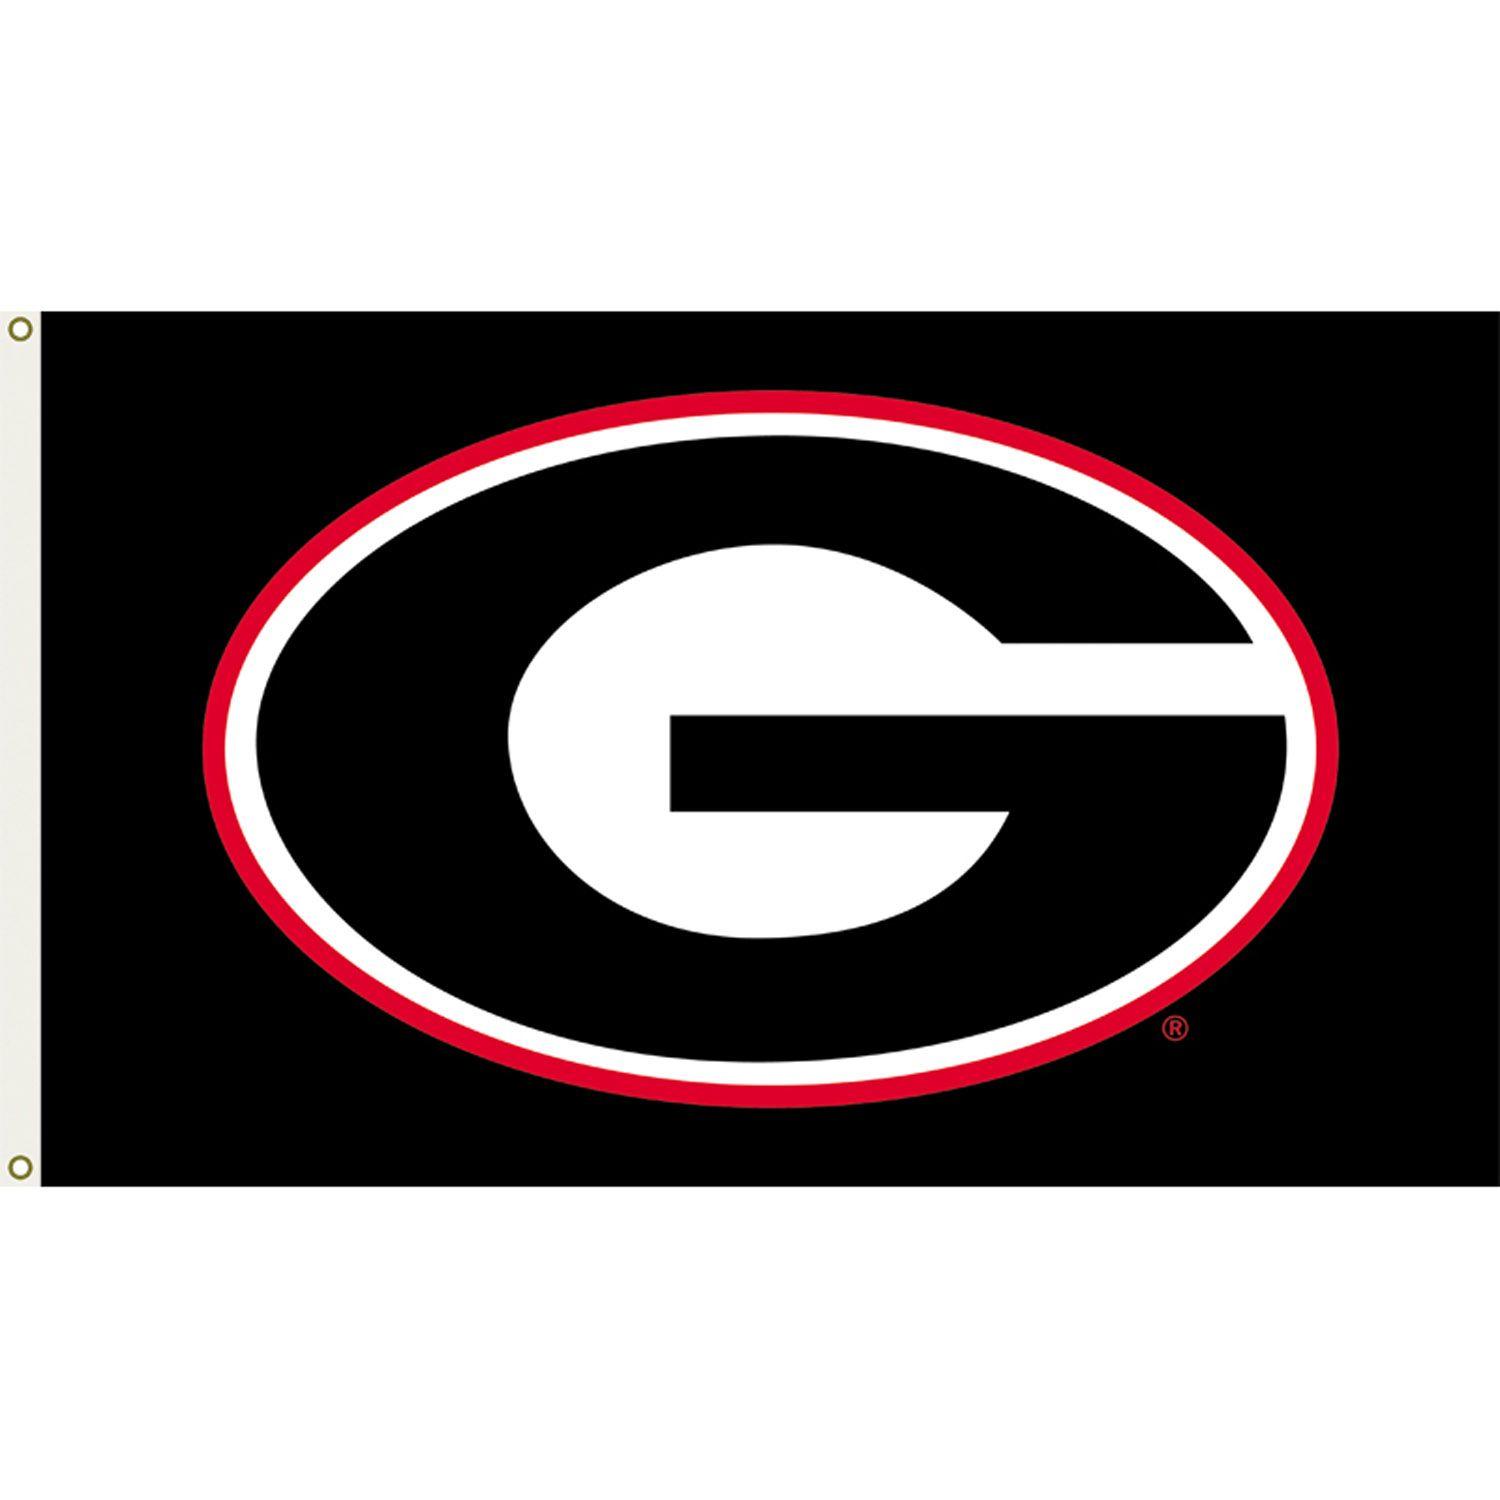 Georgia G Logo - Georgia g Logos